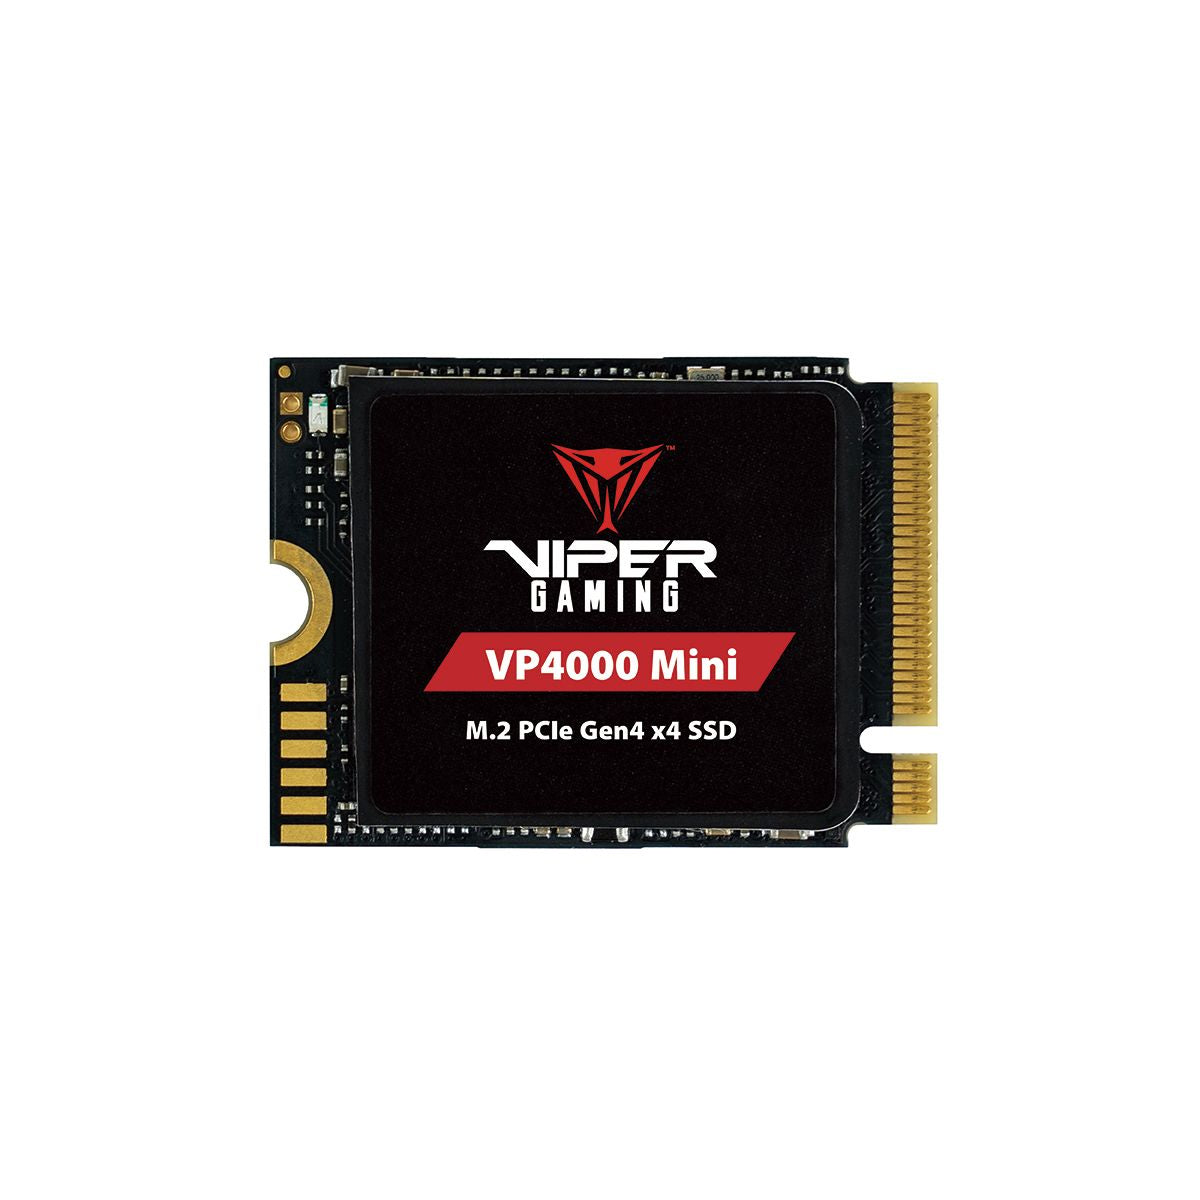 Patriot P400 Lite 2TB Internal SSD - NVMe PCIe Gen 4x4 - M.2 2280 - Solid  State Drive